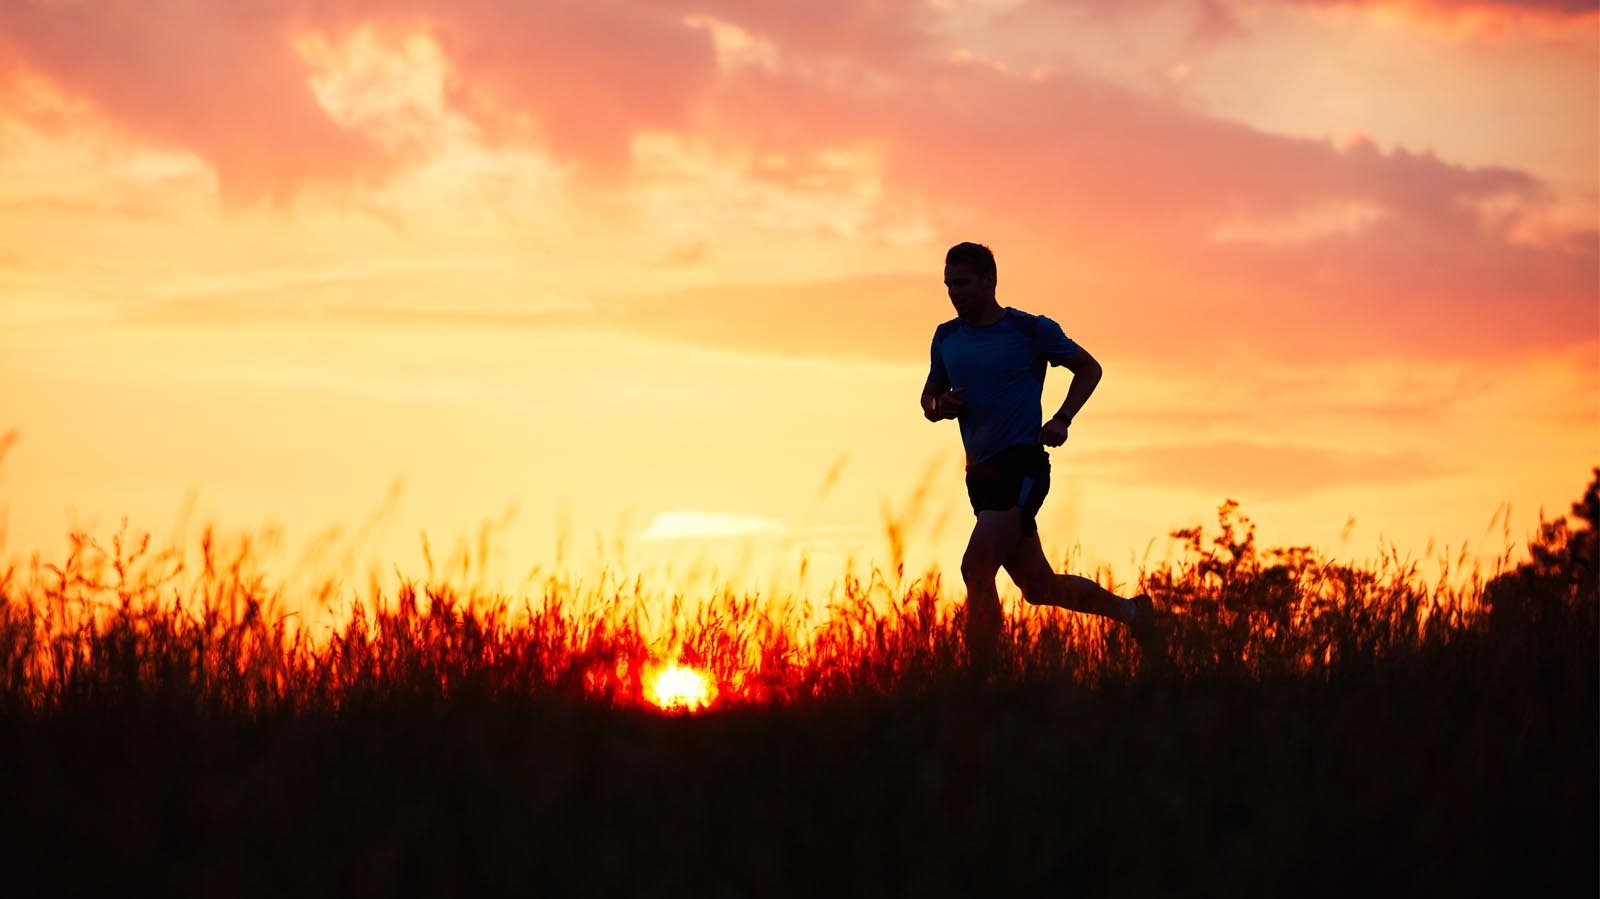 Trail runner at sunset